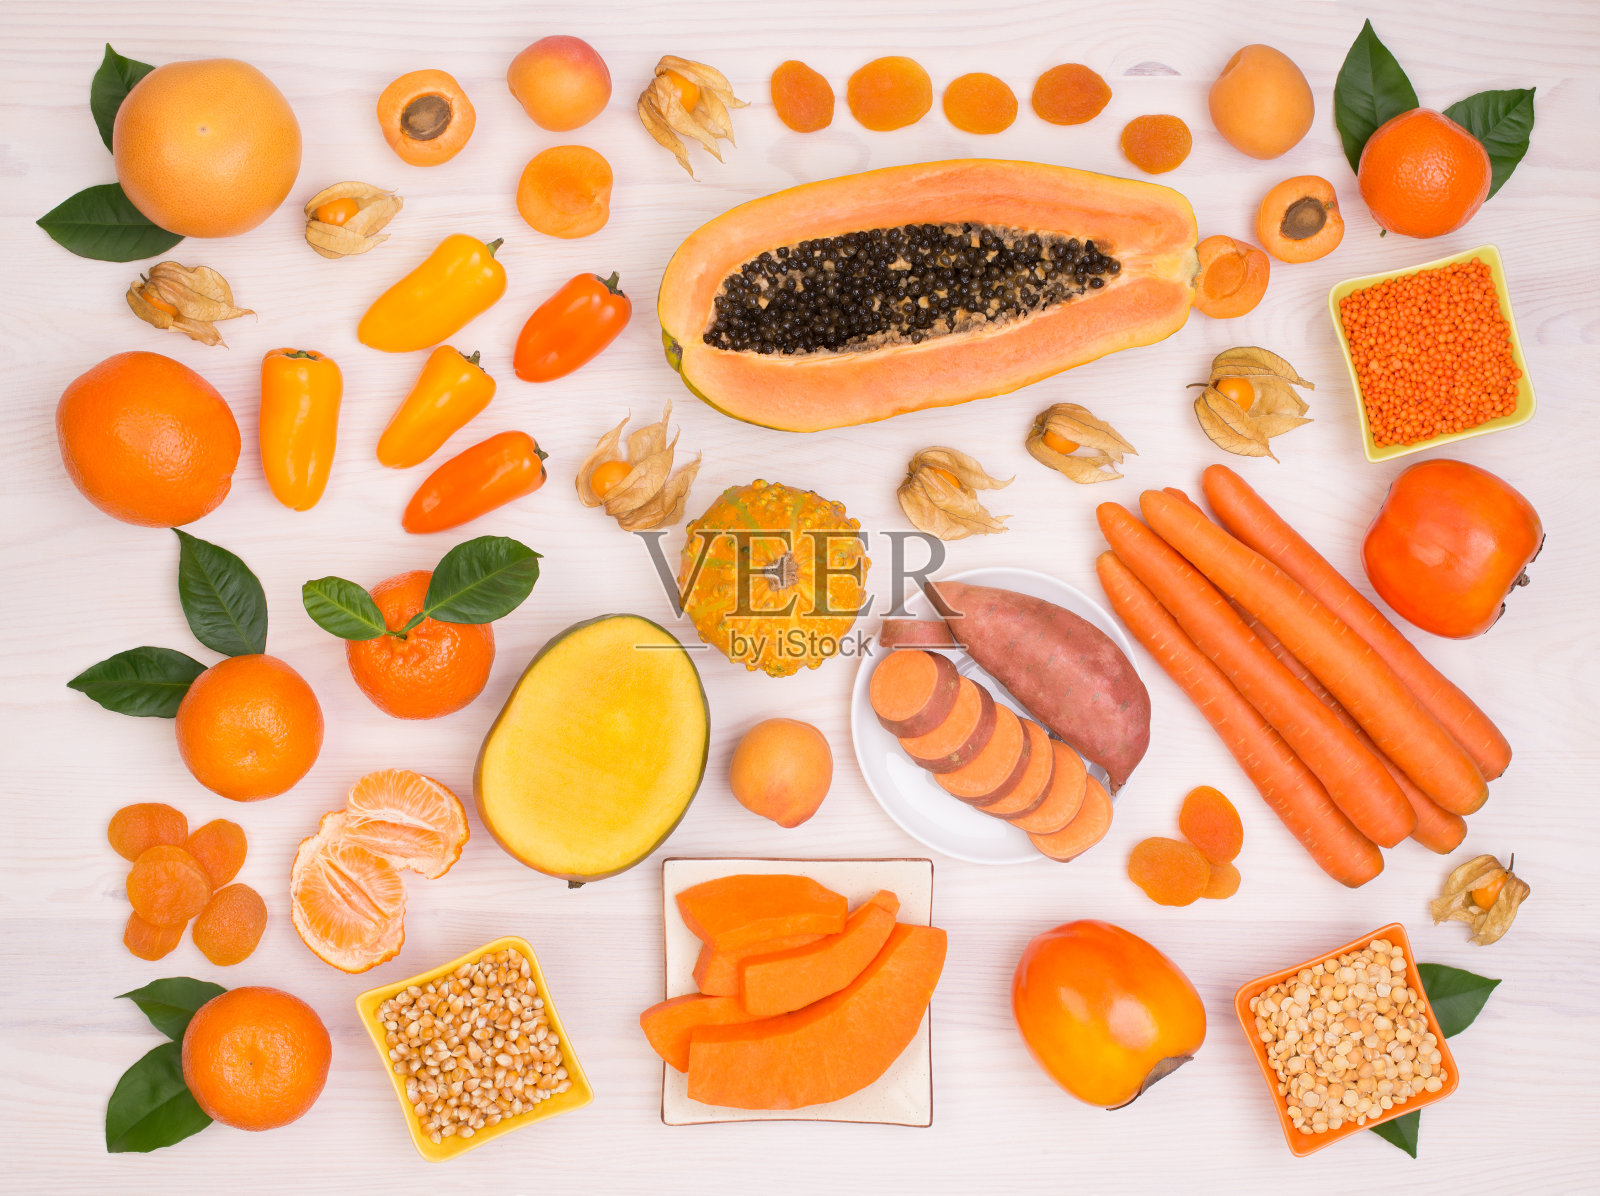 含有-胡萝卜素的橙色水果和蔬菜照片摄影图片